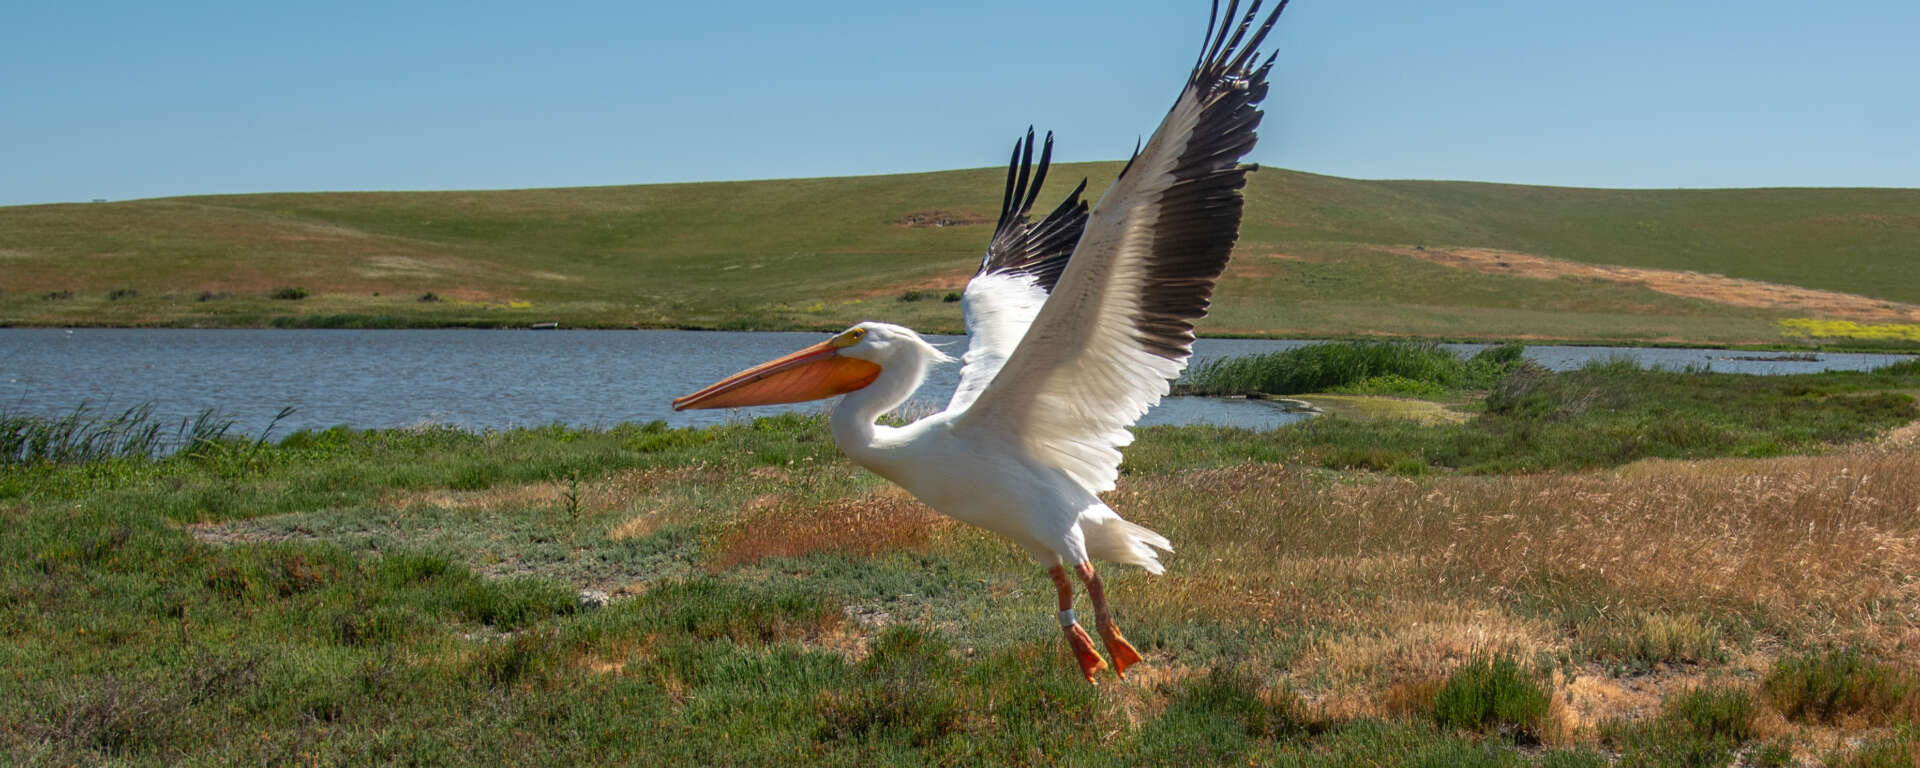 An American White Pelican in flight